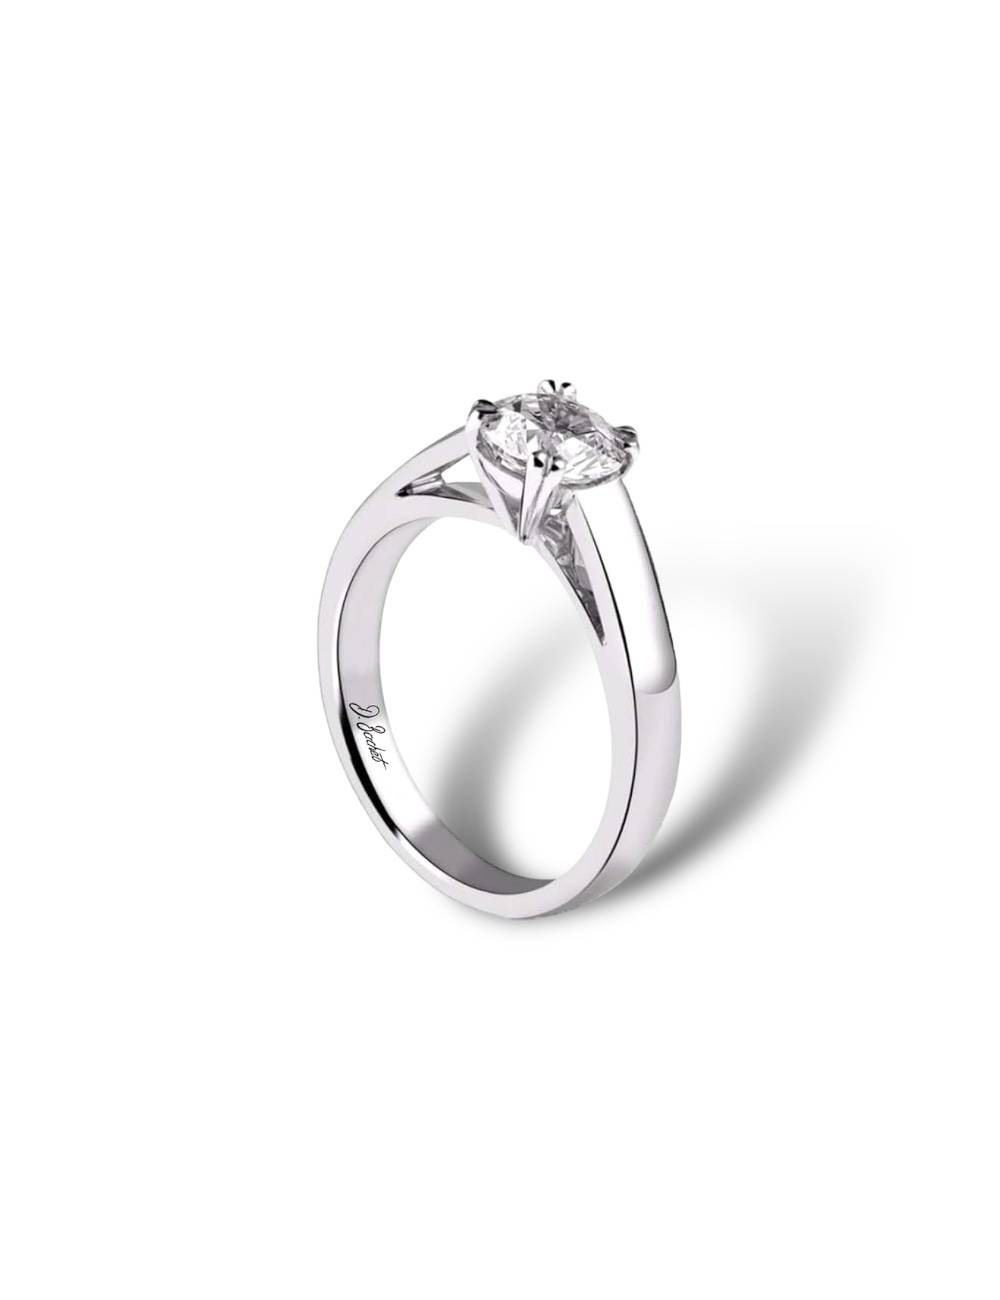 Solitaire platine moderne 0.50 ct diamant blanc, design épuré pour une élégance intemporelle.